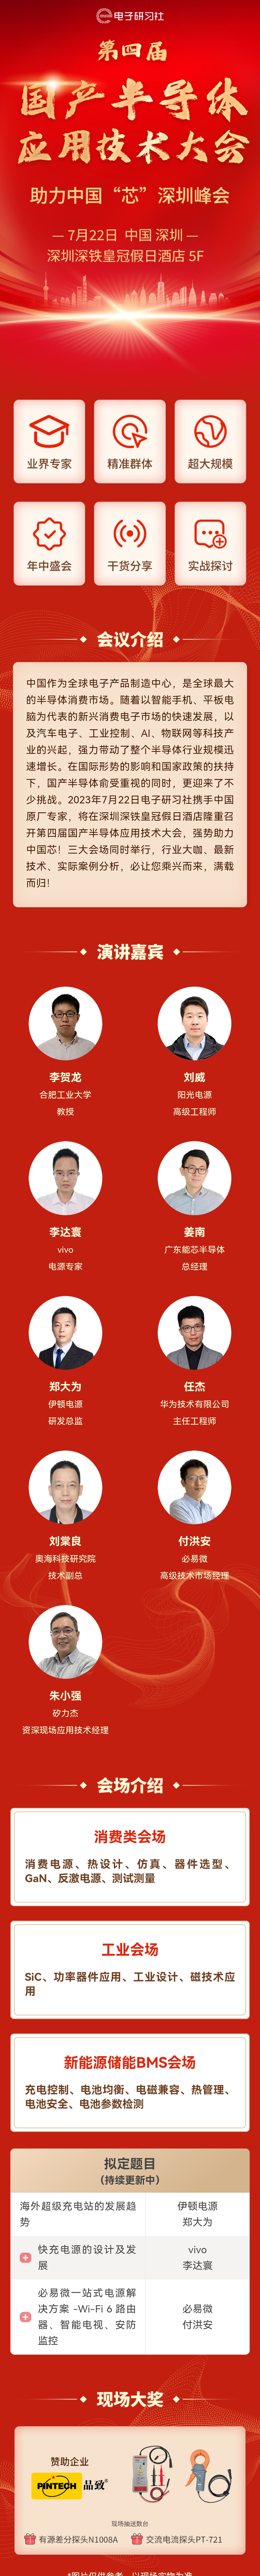 第四届国产半导体应用技术大会——助力中国芯